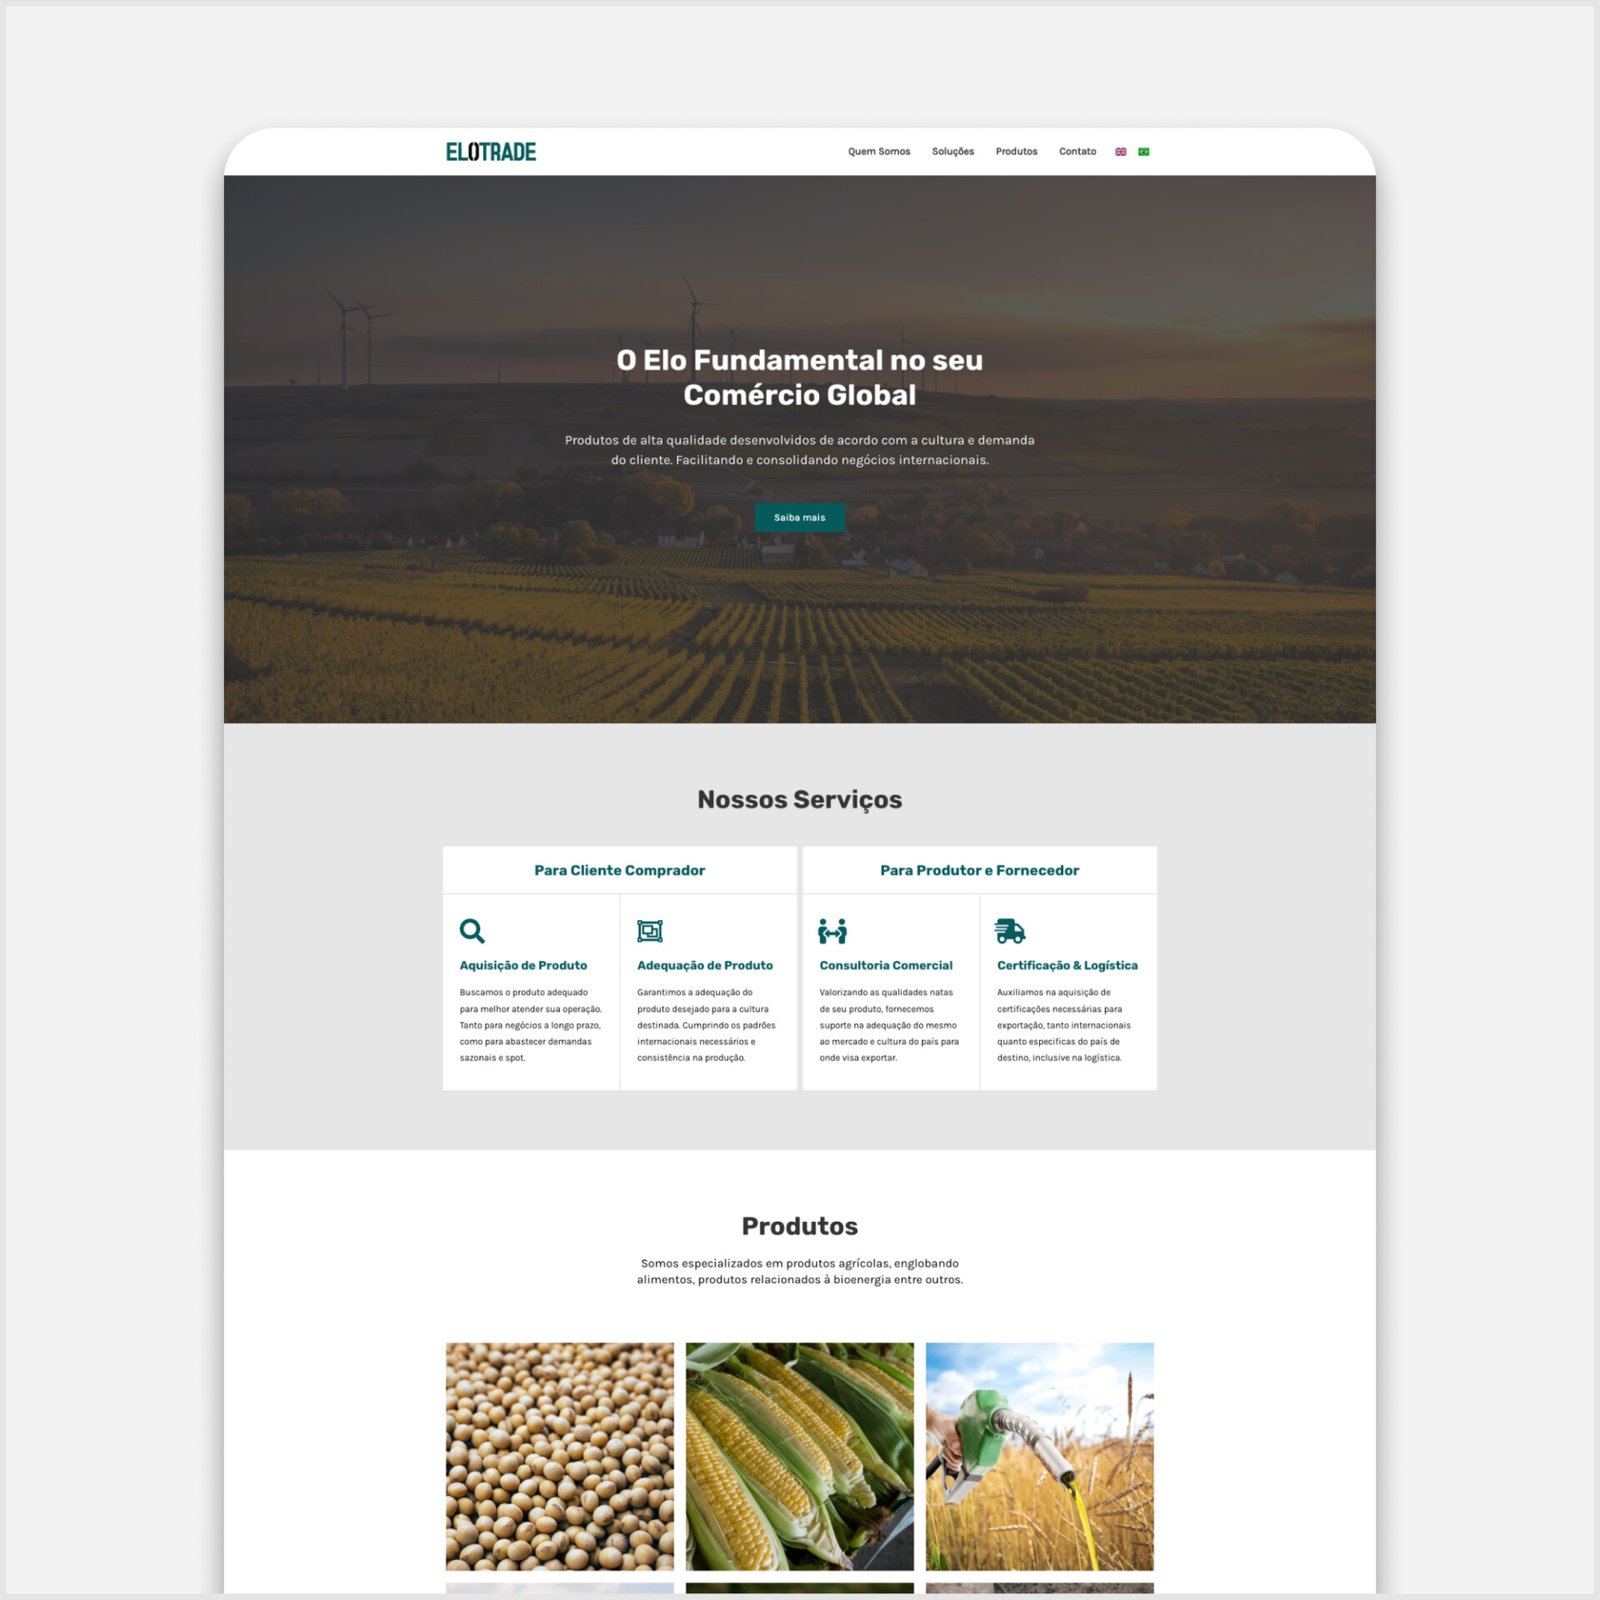 Projetos de webdesign, página principal de um website institucional de uma empresa de negócios internacionais.